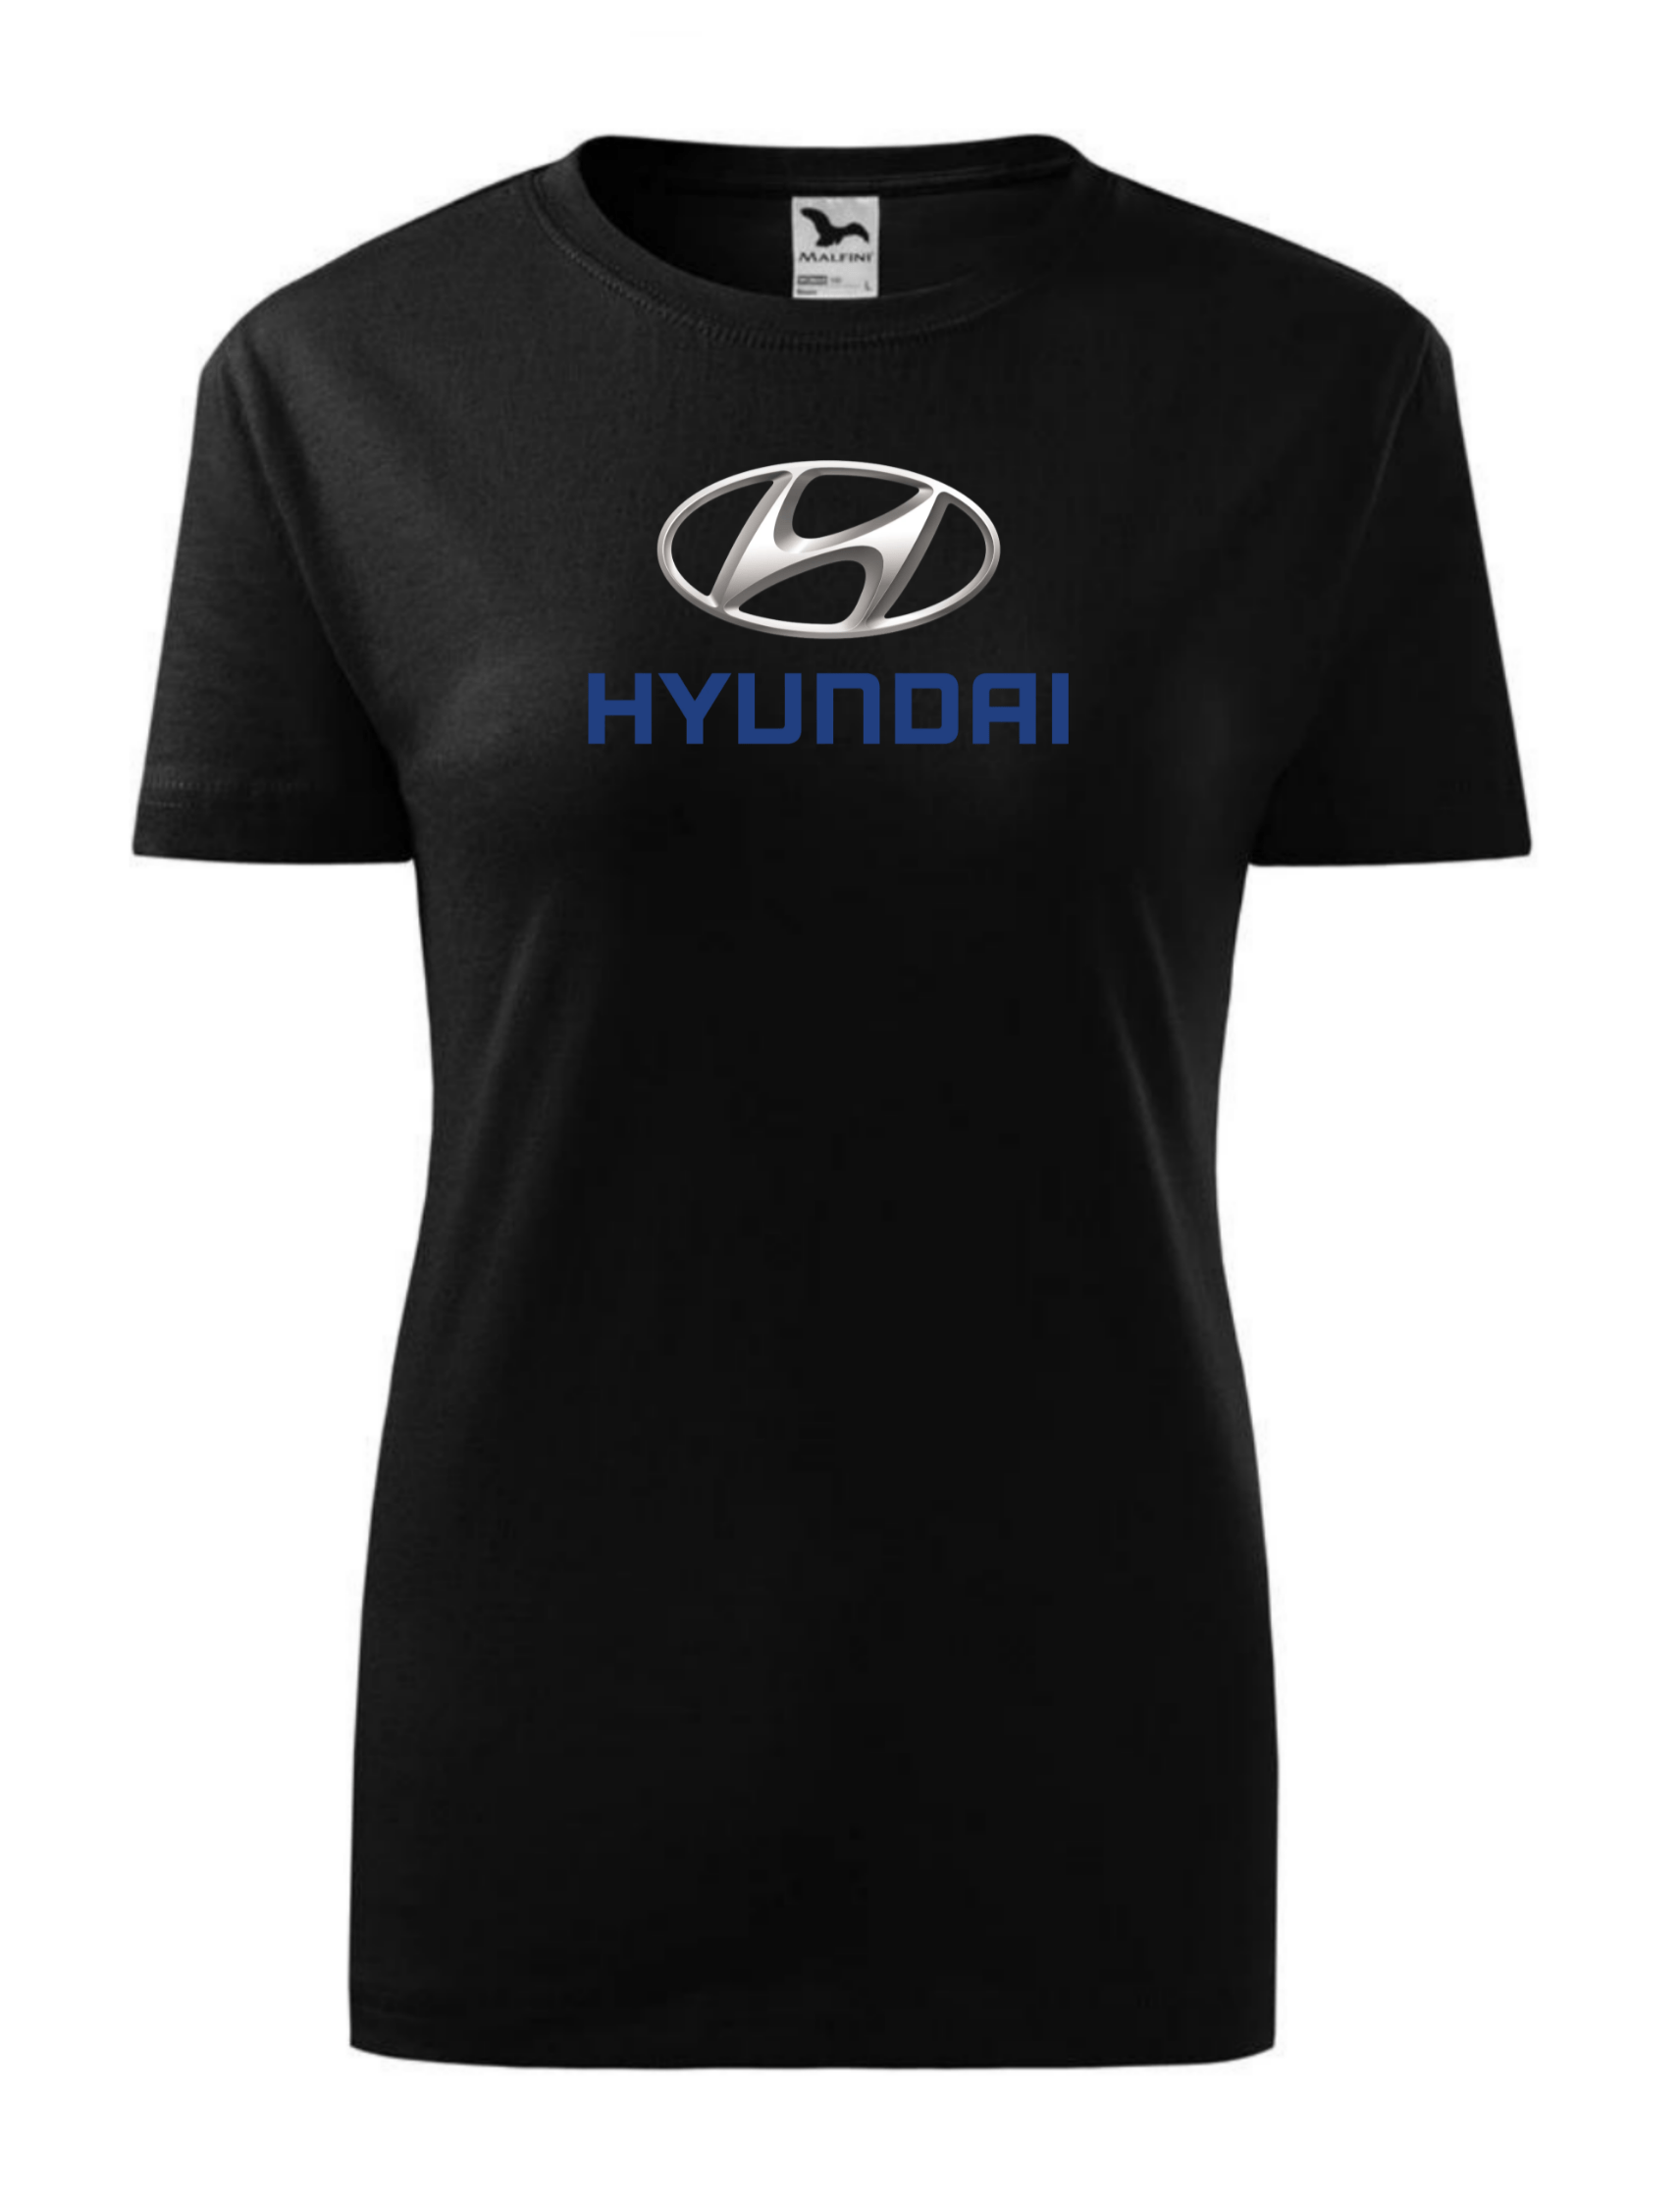 Dámské tričko s potiskem značky Hyundai